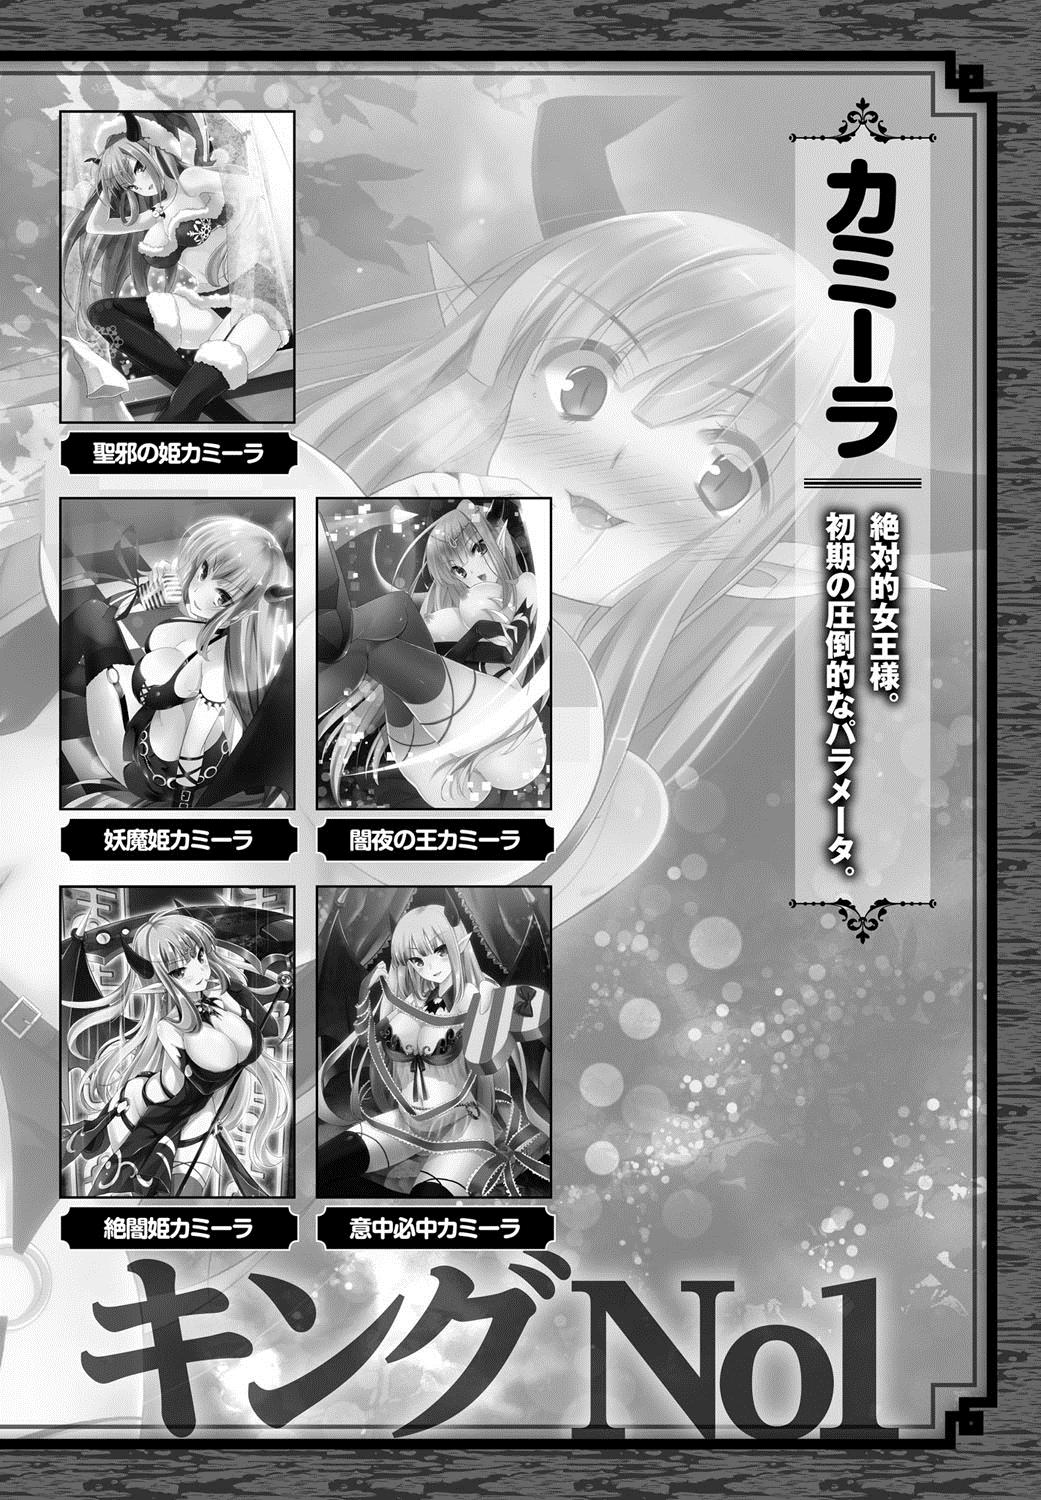 [Anthology] Lord of Valkyrie Adult - Comic Anthology R18 Handakara Saigomade... Mou, Kishi-sama no Ecchi♪ 108